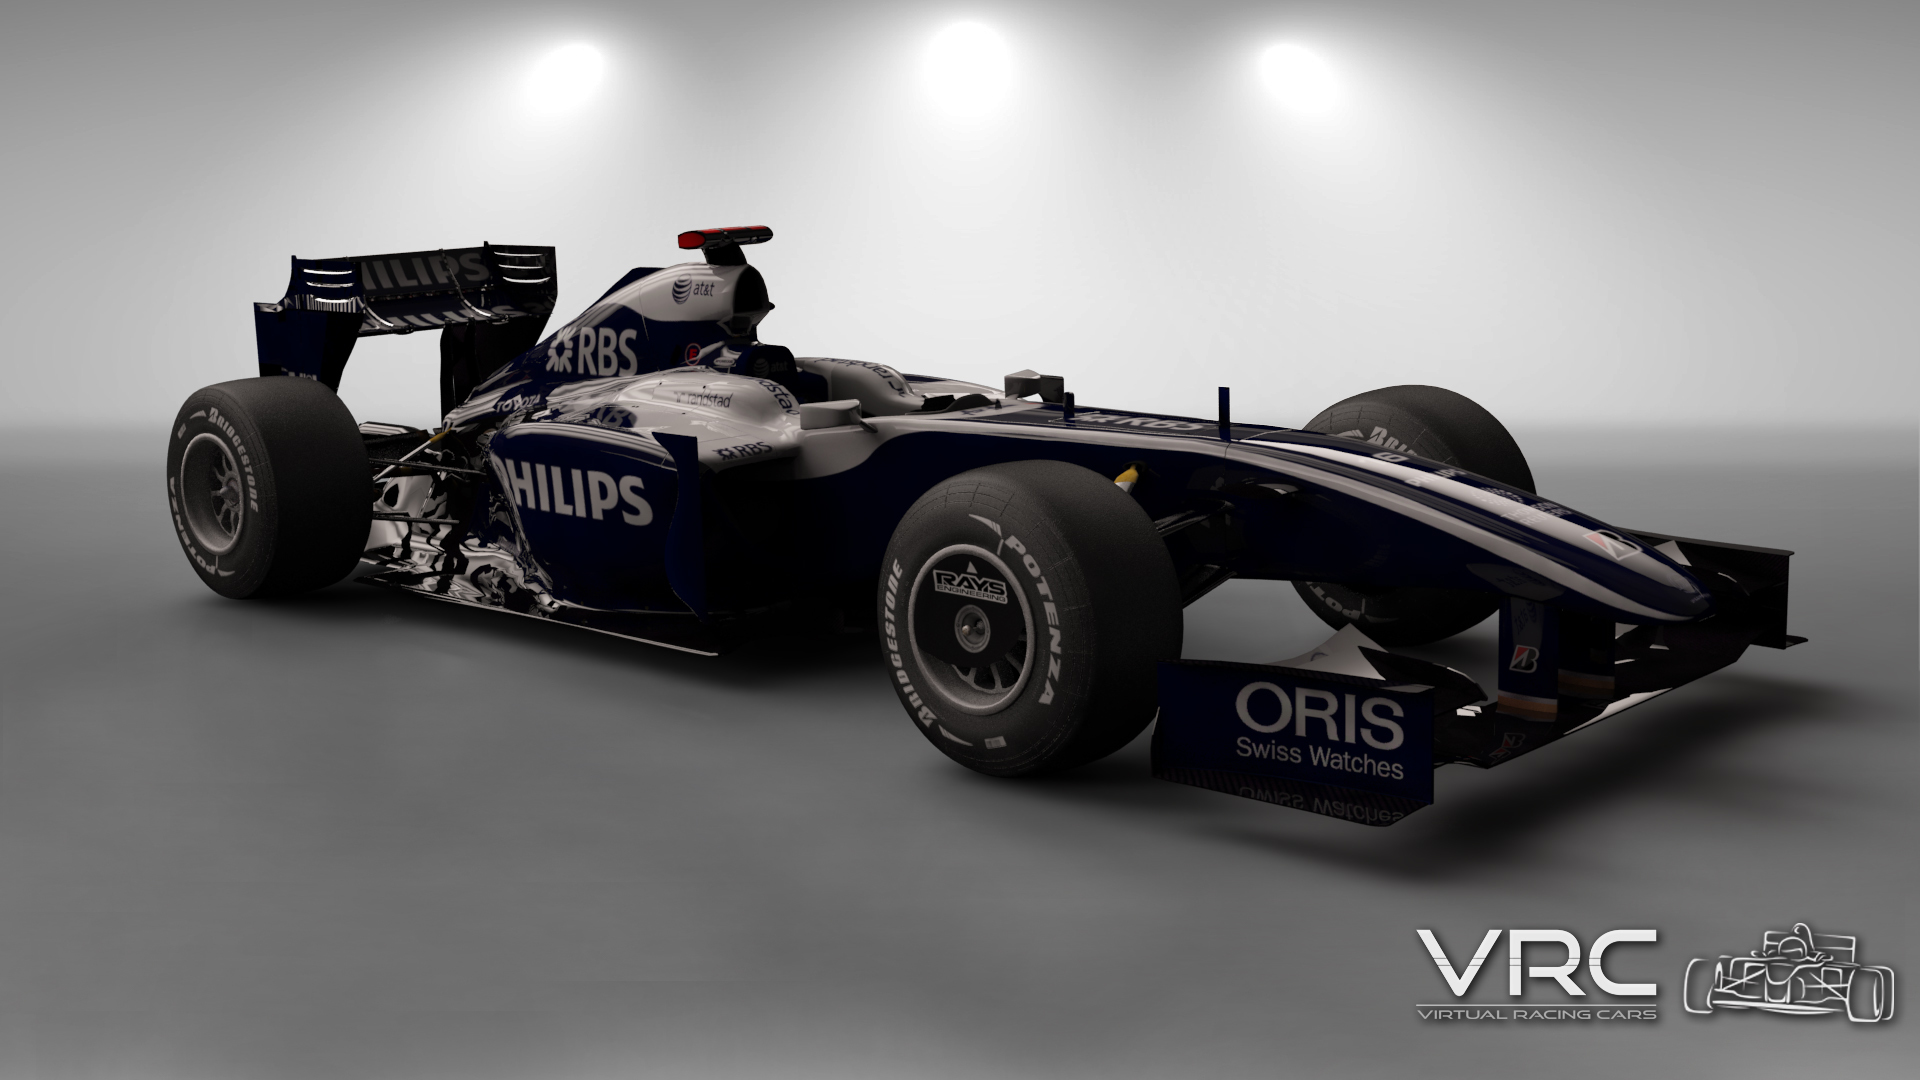 More information about "Nuovo update per la Williams FW31 di Assetto Corsa"